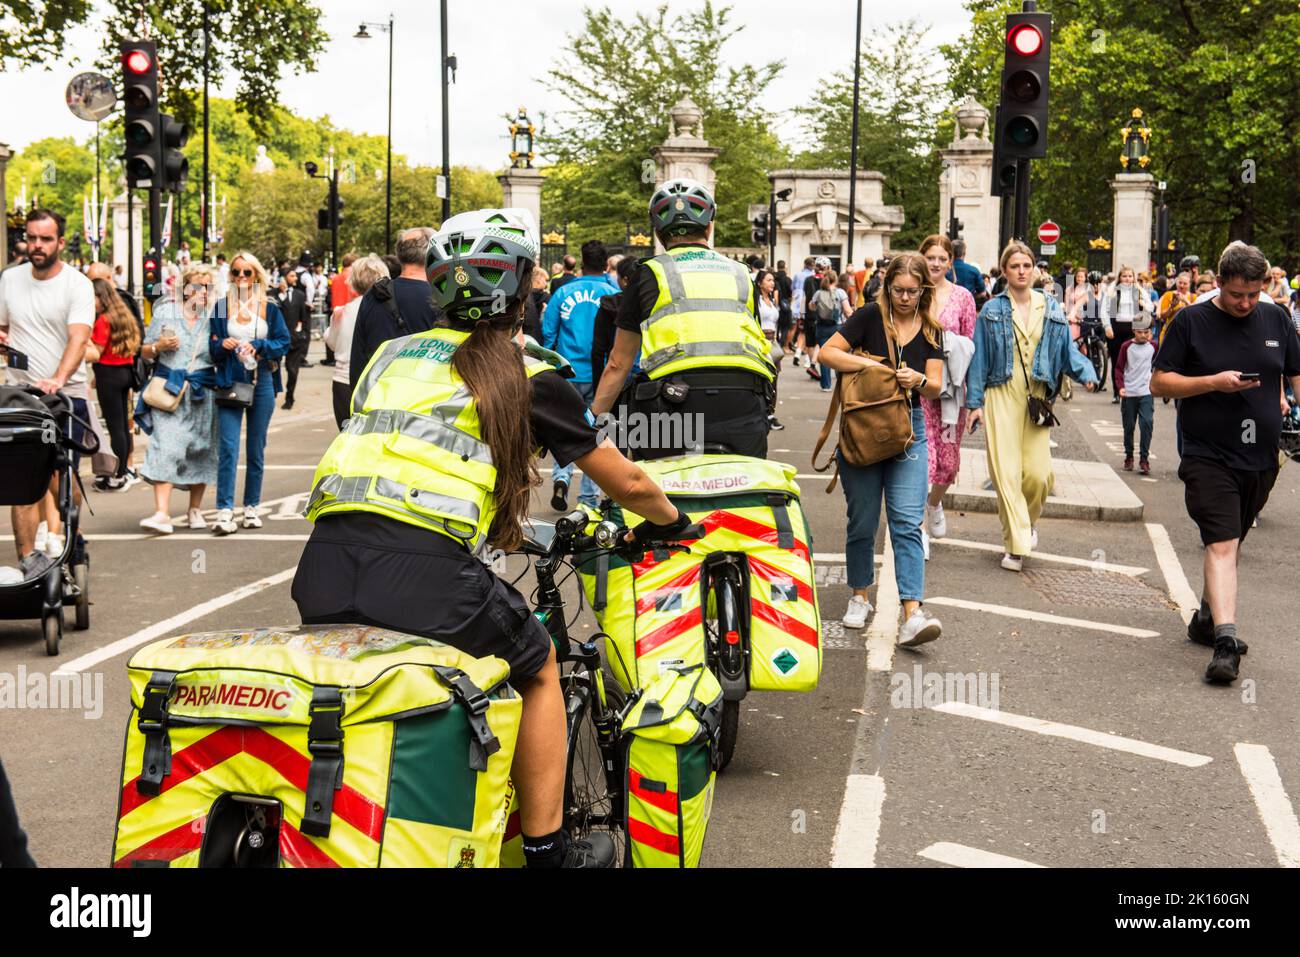 Paramédico en bicicleta navegando a través de la multitud peatonal cerca del Palacio de Buckingham Foto de stock